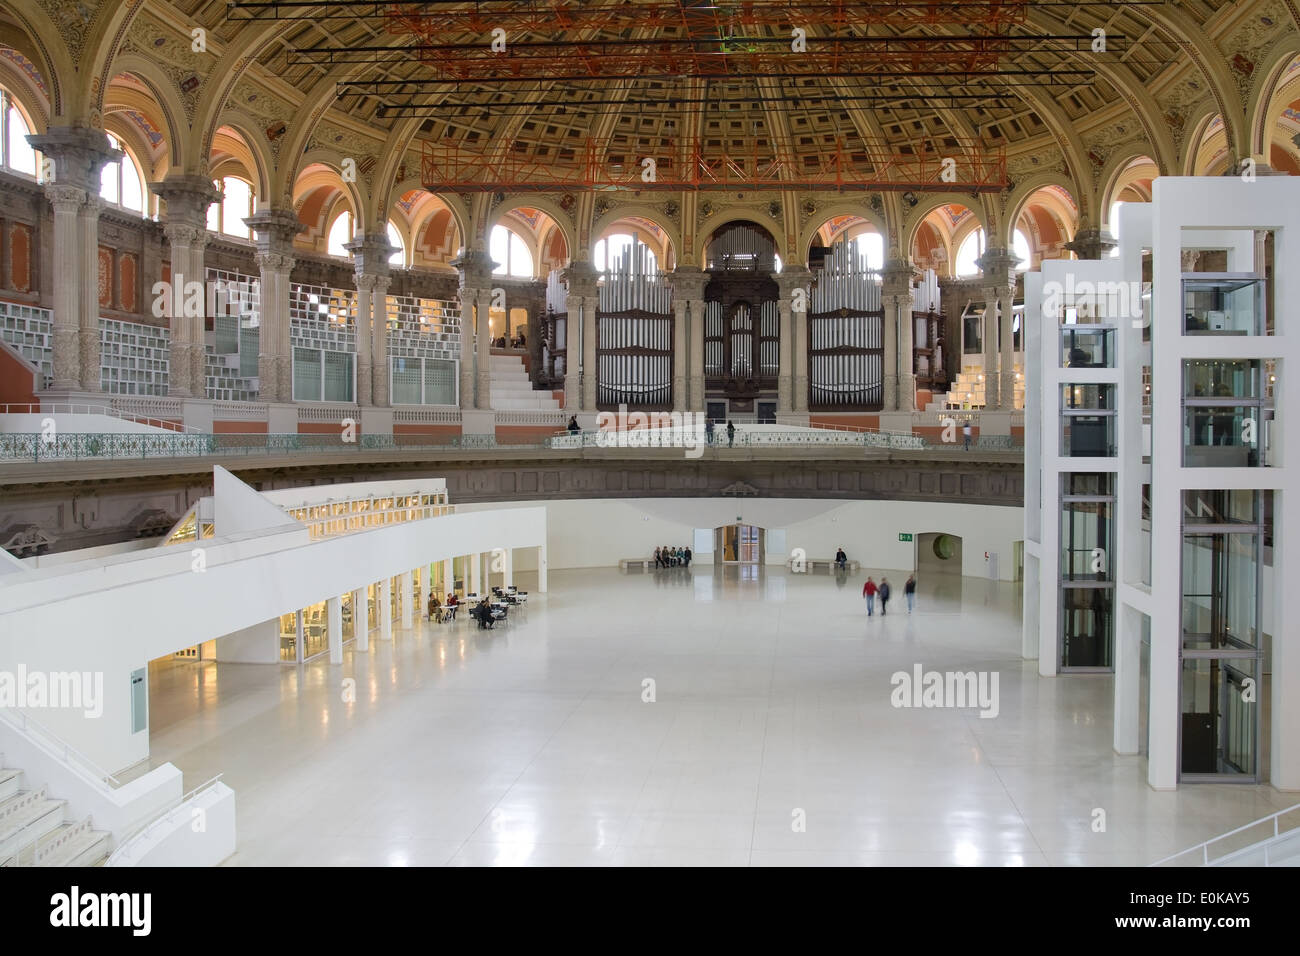 La salle ovale du Musée National d'Art de Catalogne (MNAC), décor de nombreux événements à Barcelone, Espagne. Banque D'Images